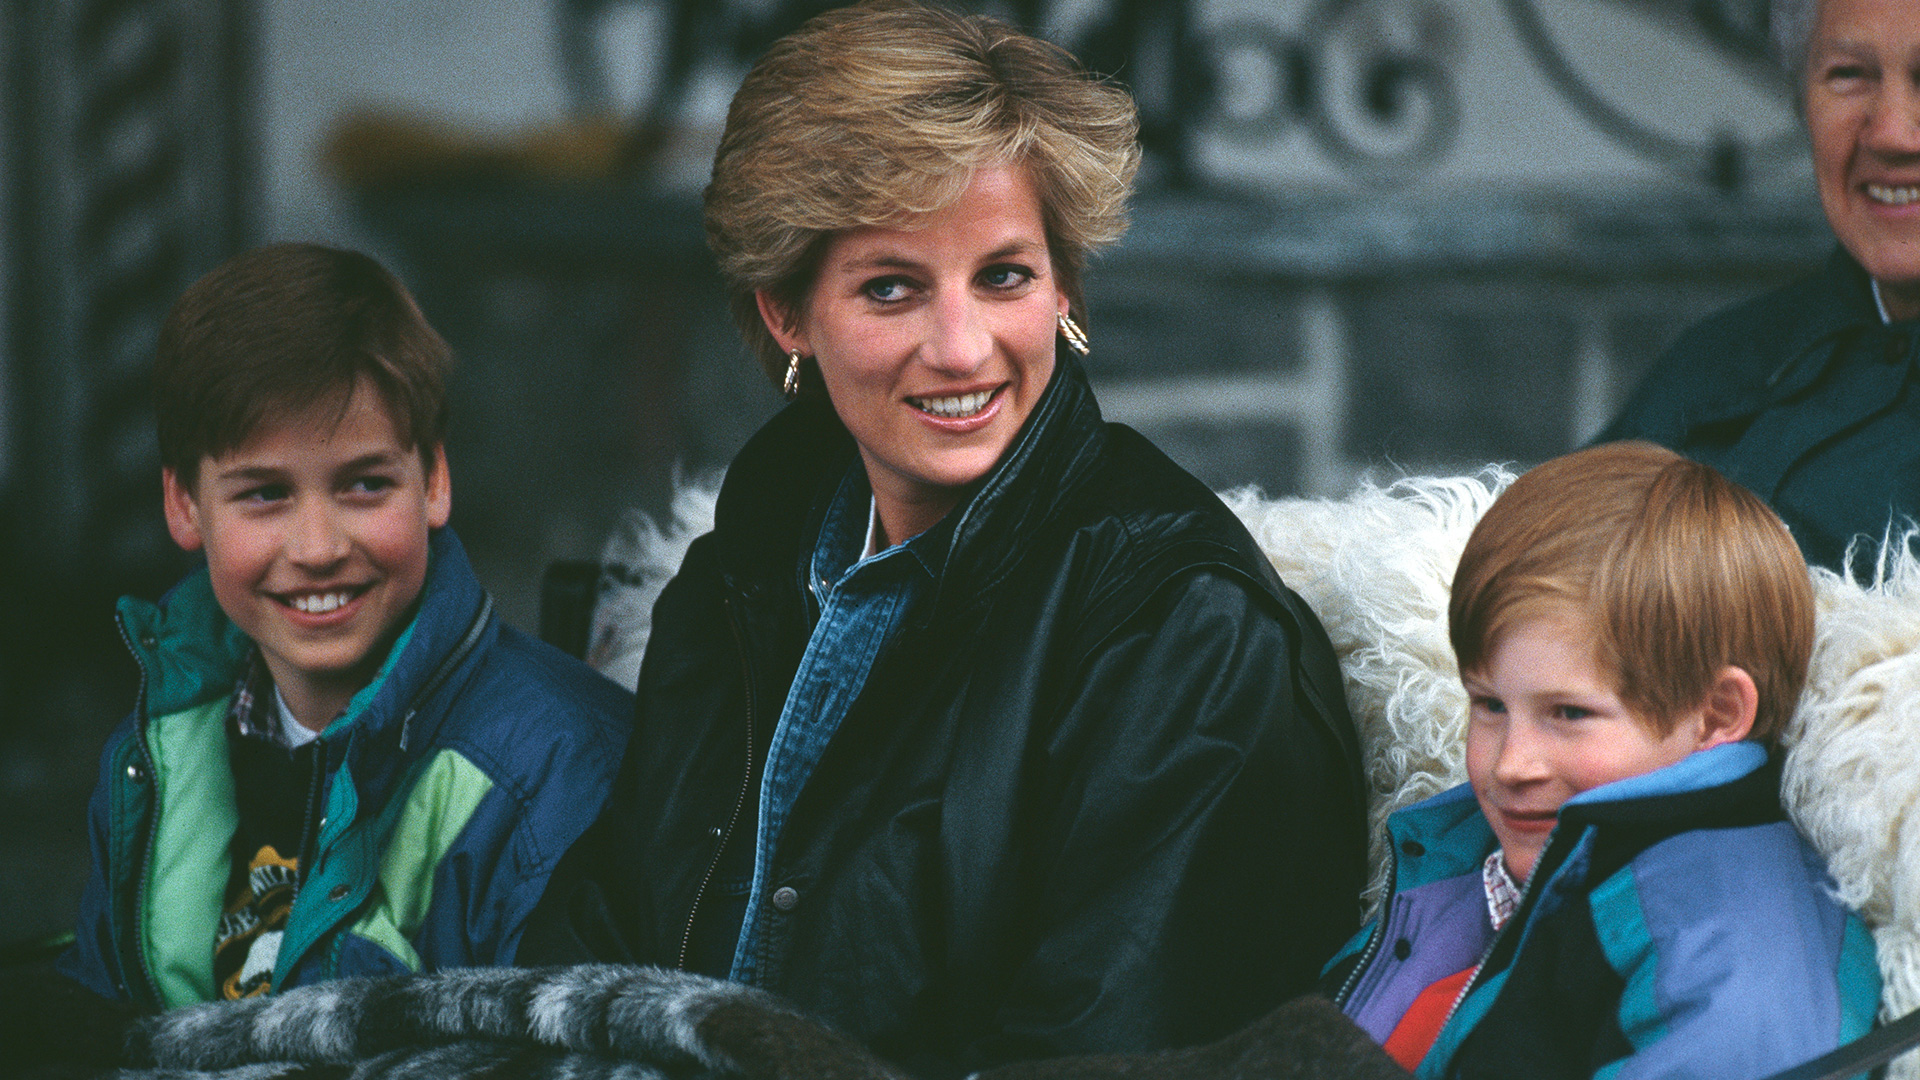 Diana con el príncipe William y el príncipe Harry durante unas vacaciones en Lech, Austria, el 30 de marzo de 1993 (Getty Images)